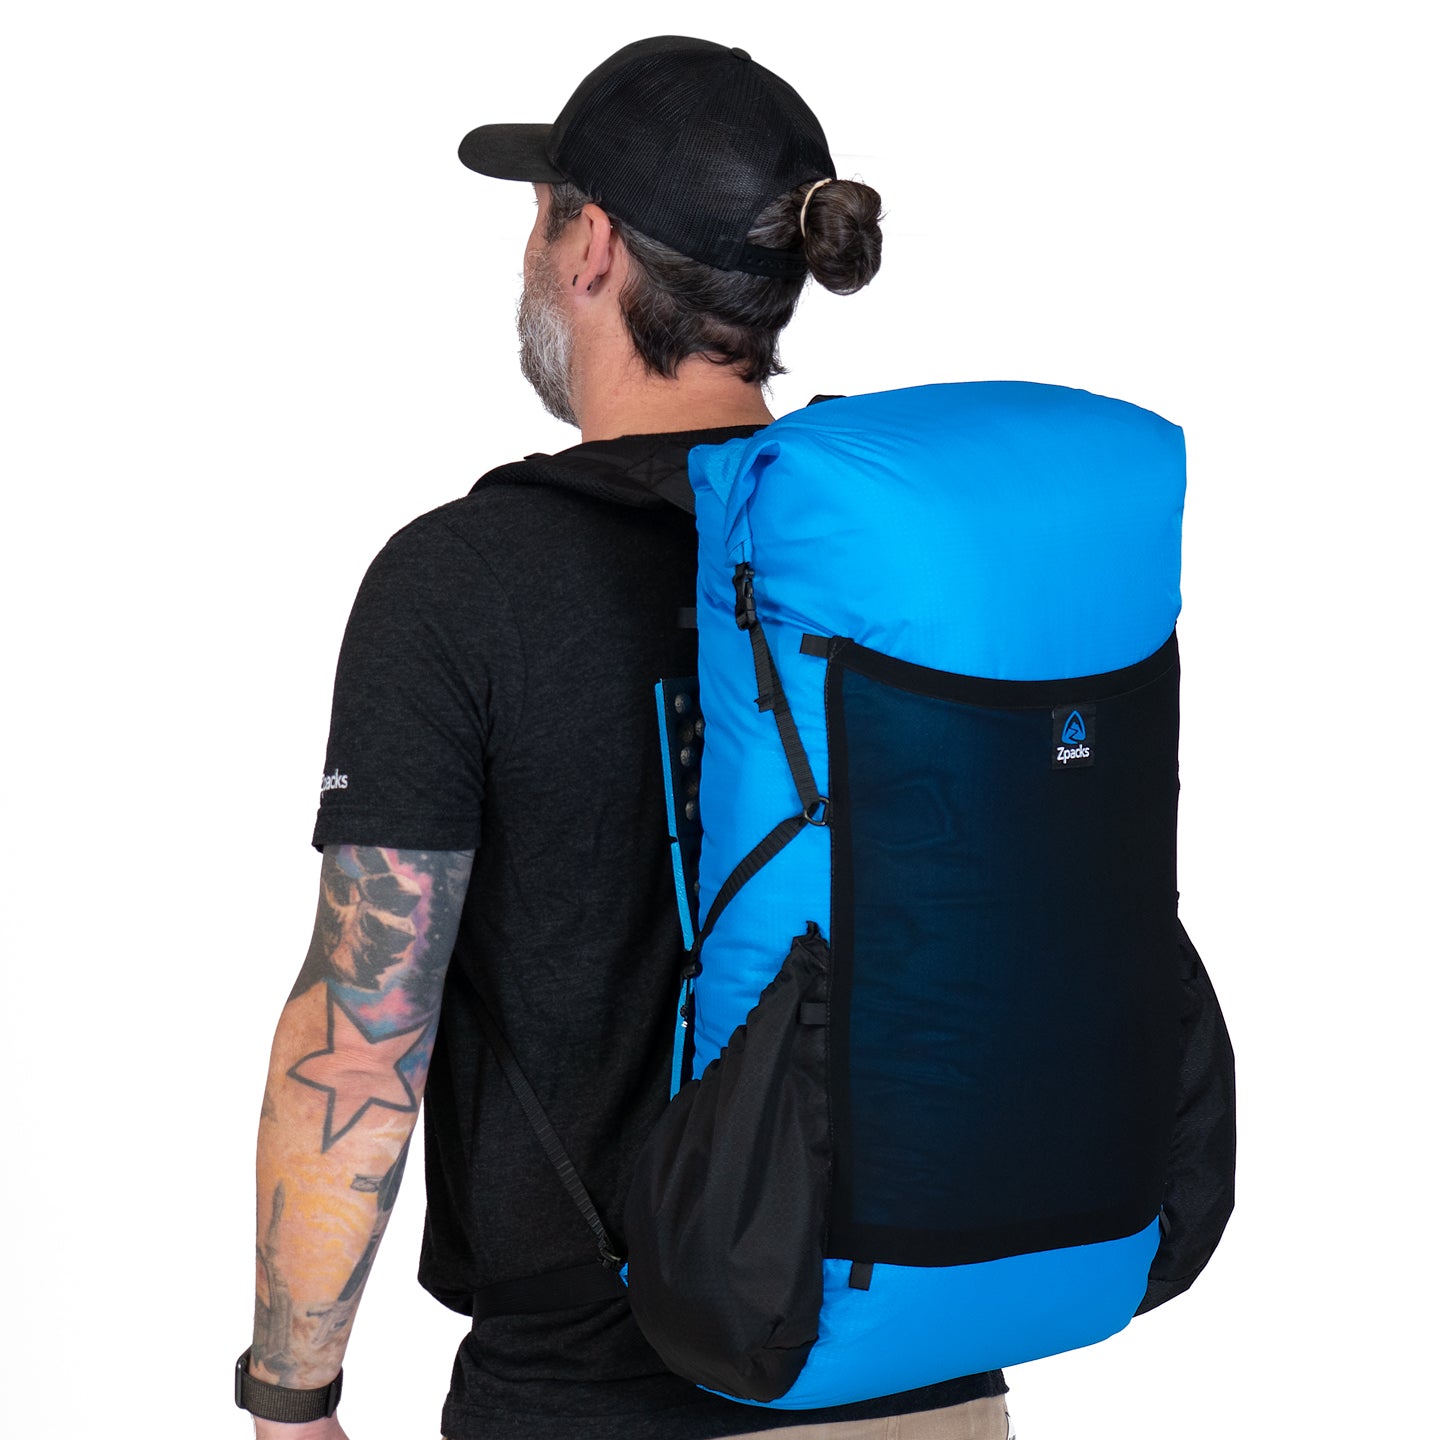 Nero 38L ROBIC Backpack – Zpacks